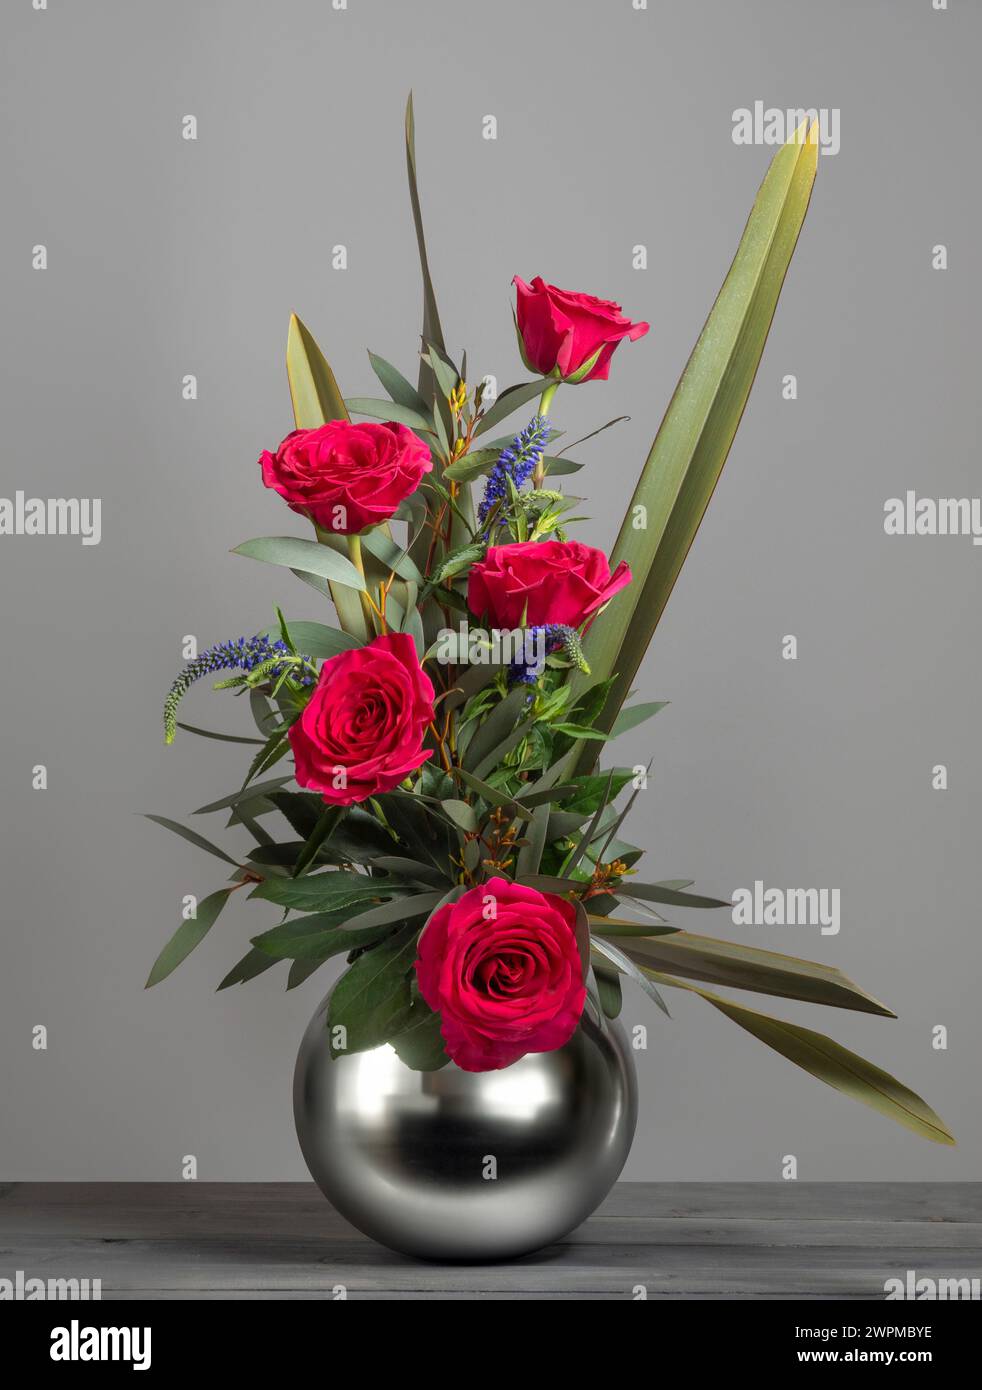 Roses rouges disposées dans un vase sphérique en miroir, vues sur fond gris Banque D'Images